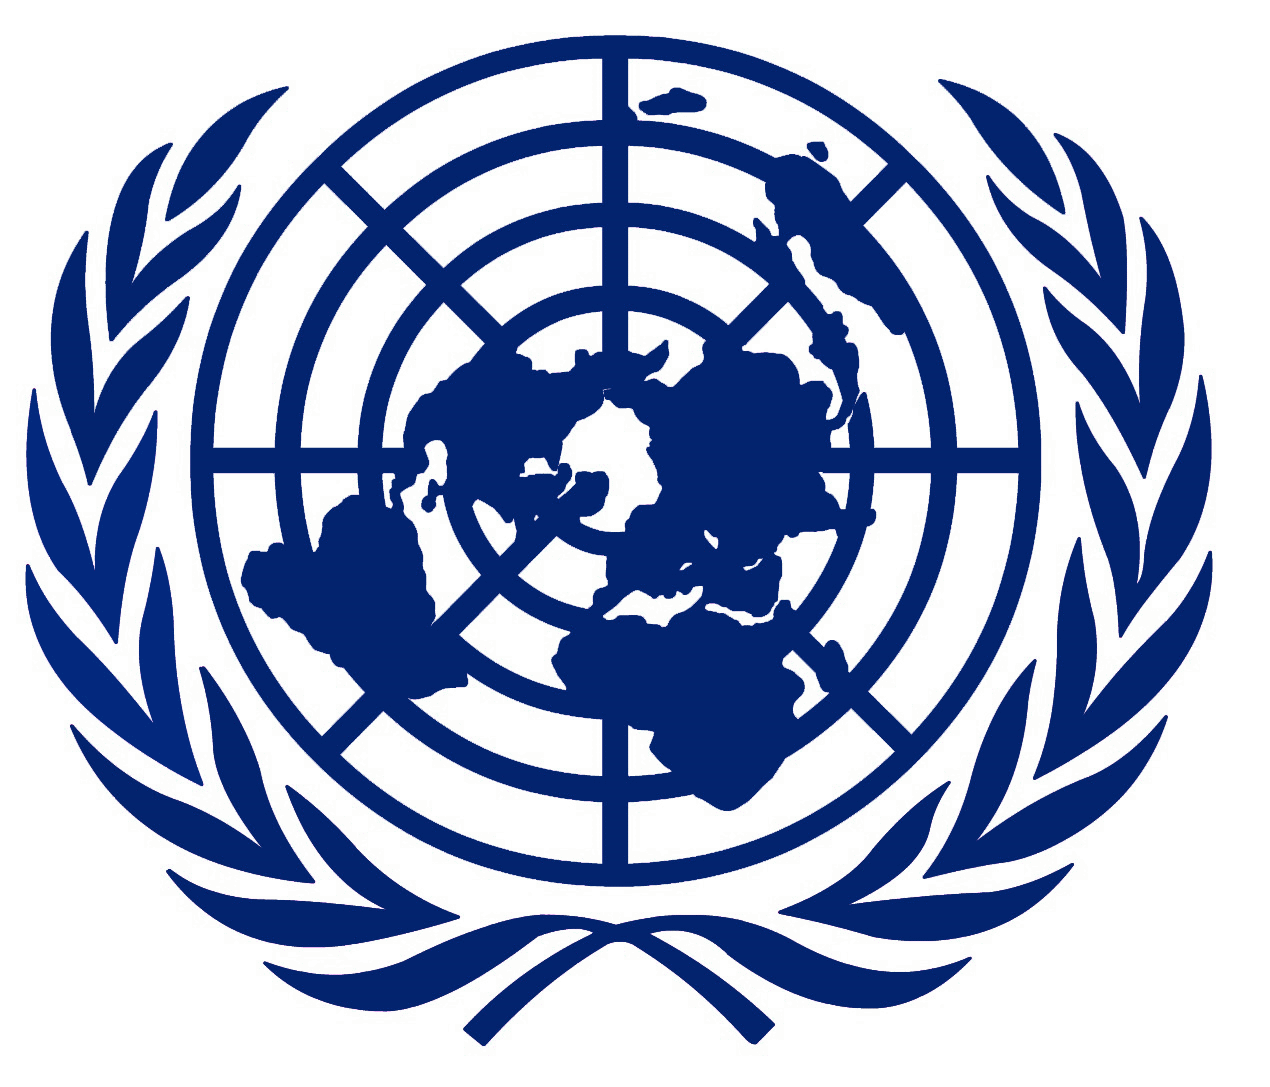 Оон о терроризме. Всемирная организация ООН лого. Совет безопасности ООН логотип. Совет безопасности ООН символ. Совет безопасности ООН герб.